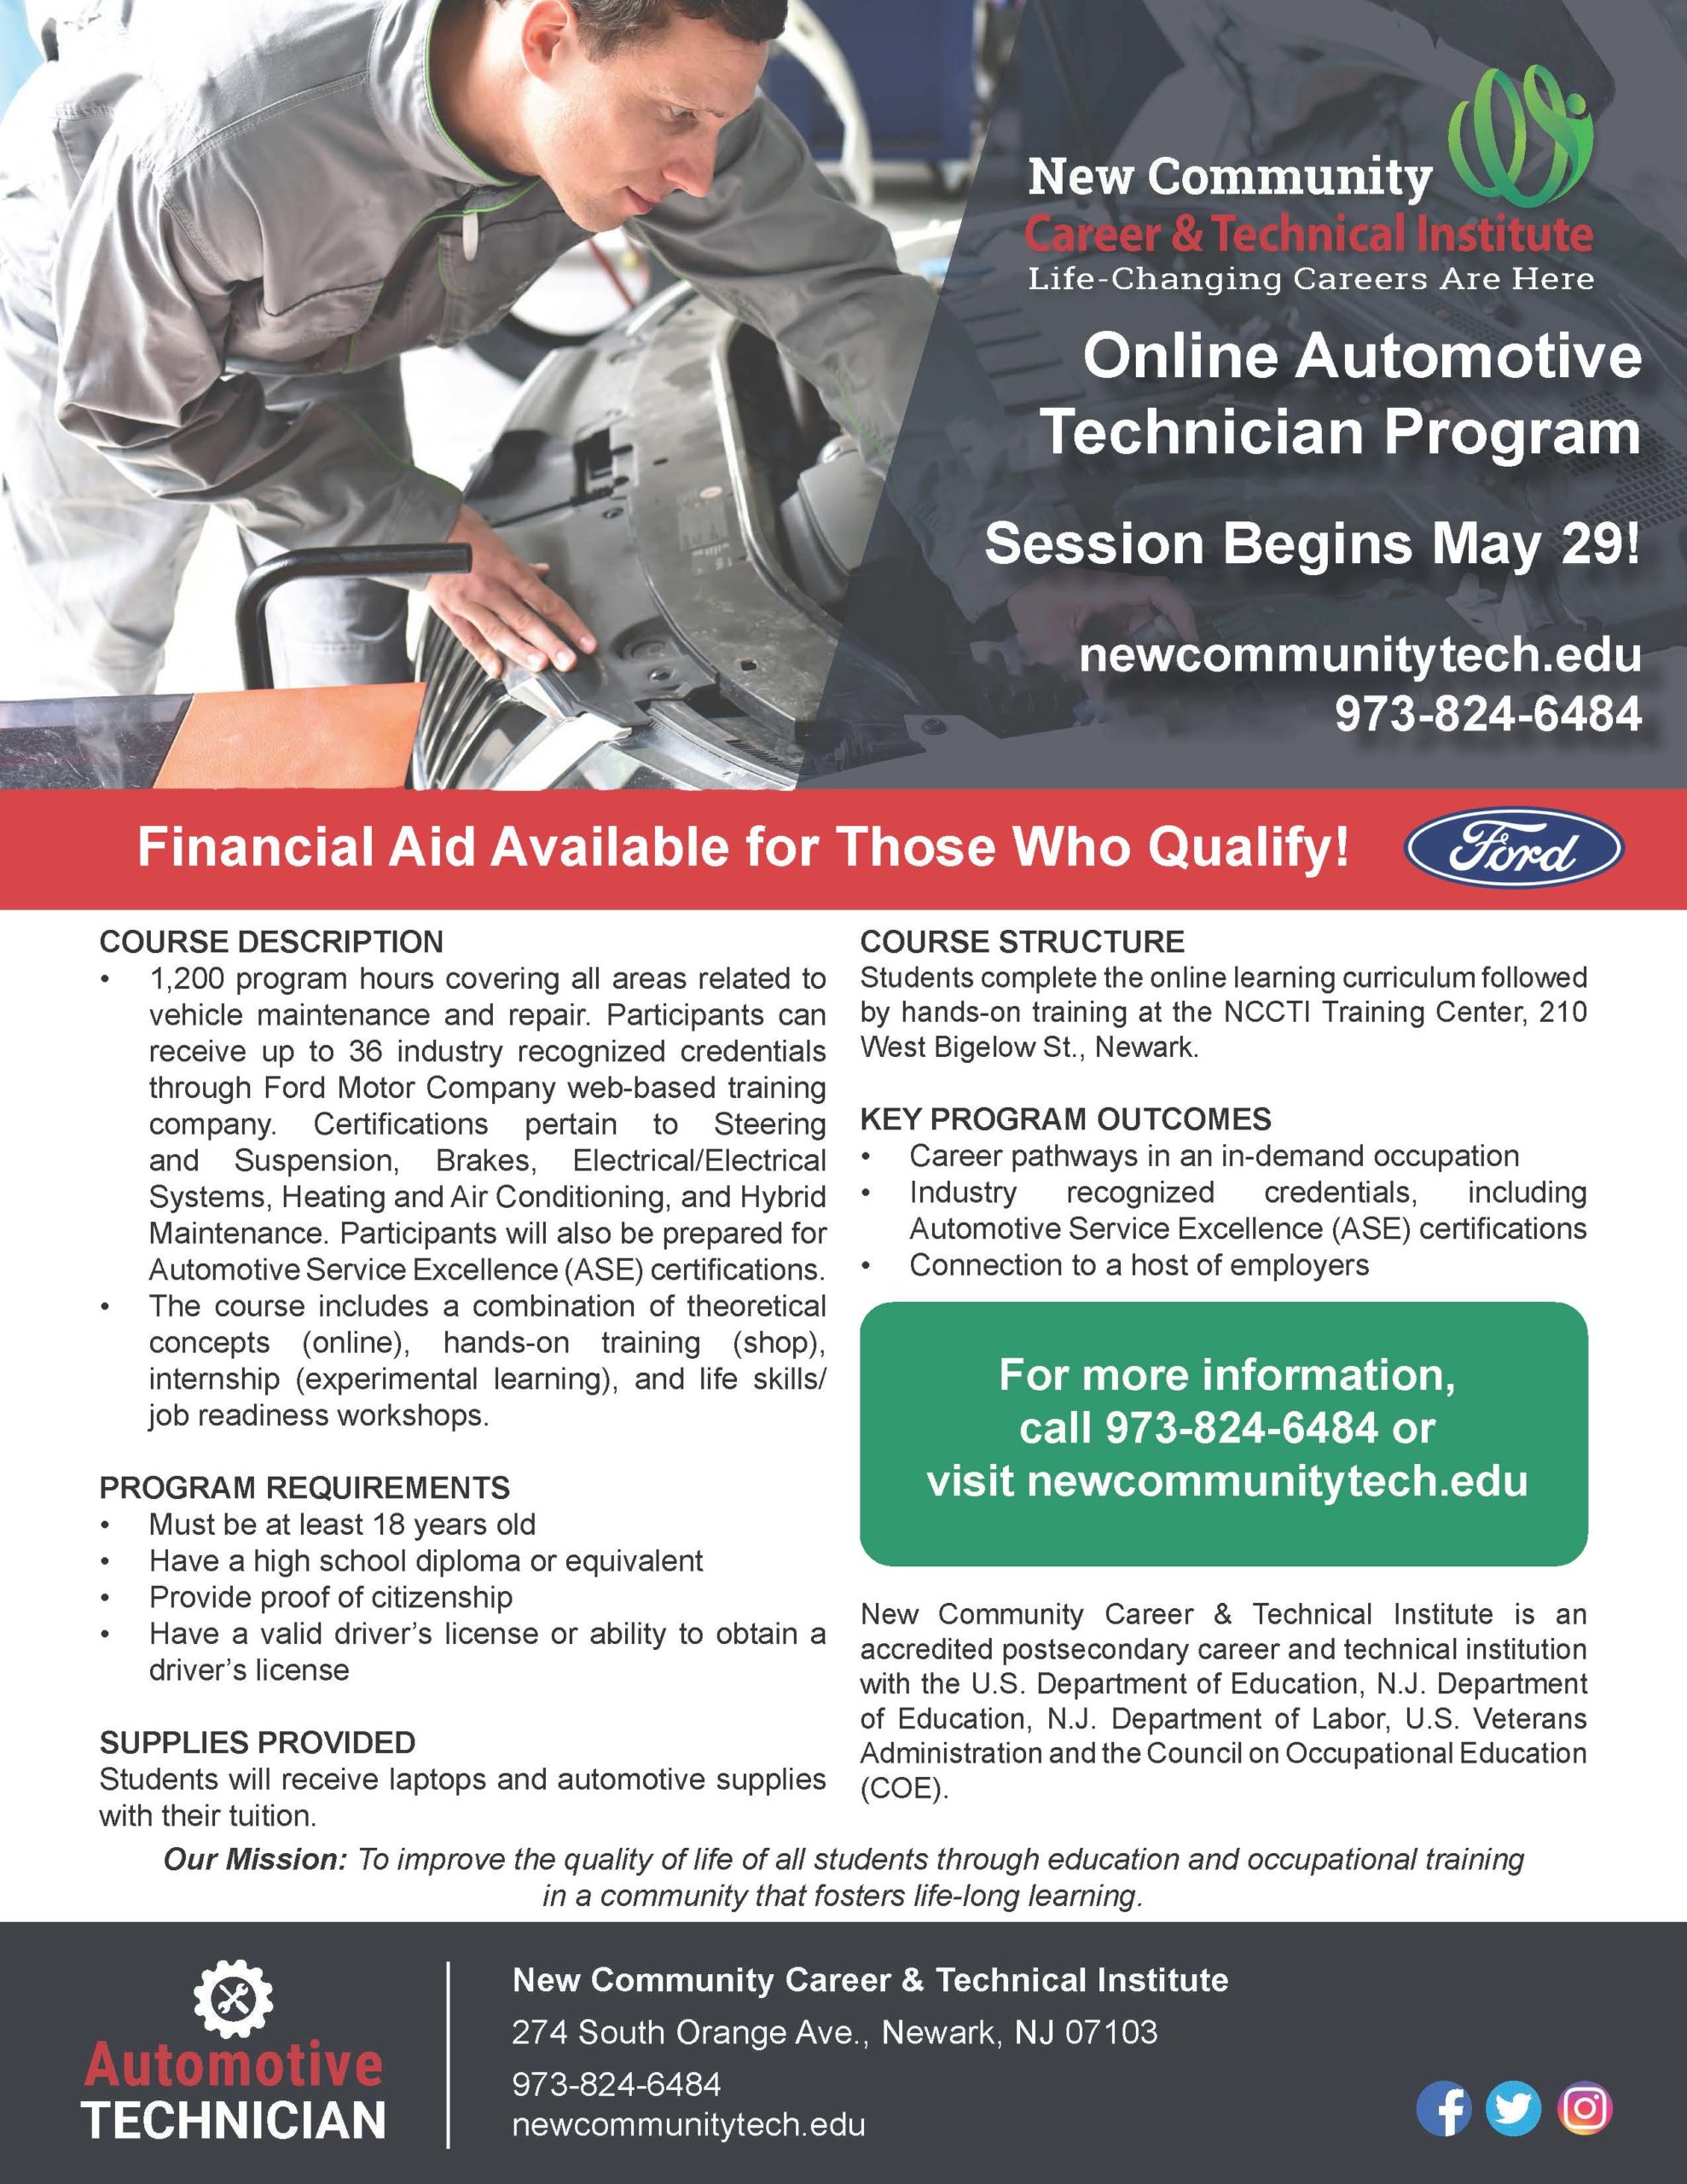 Online Automotive Program Flyer 4-30-2020